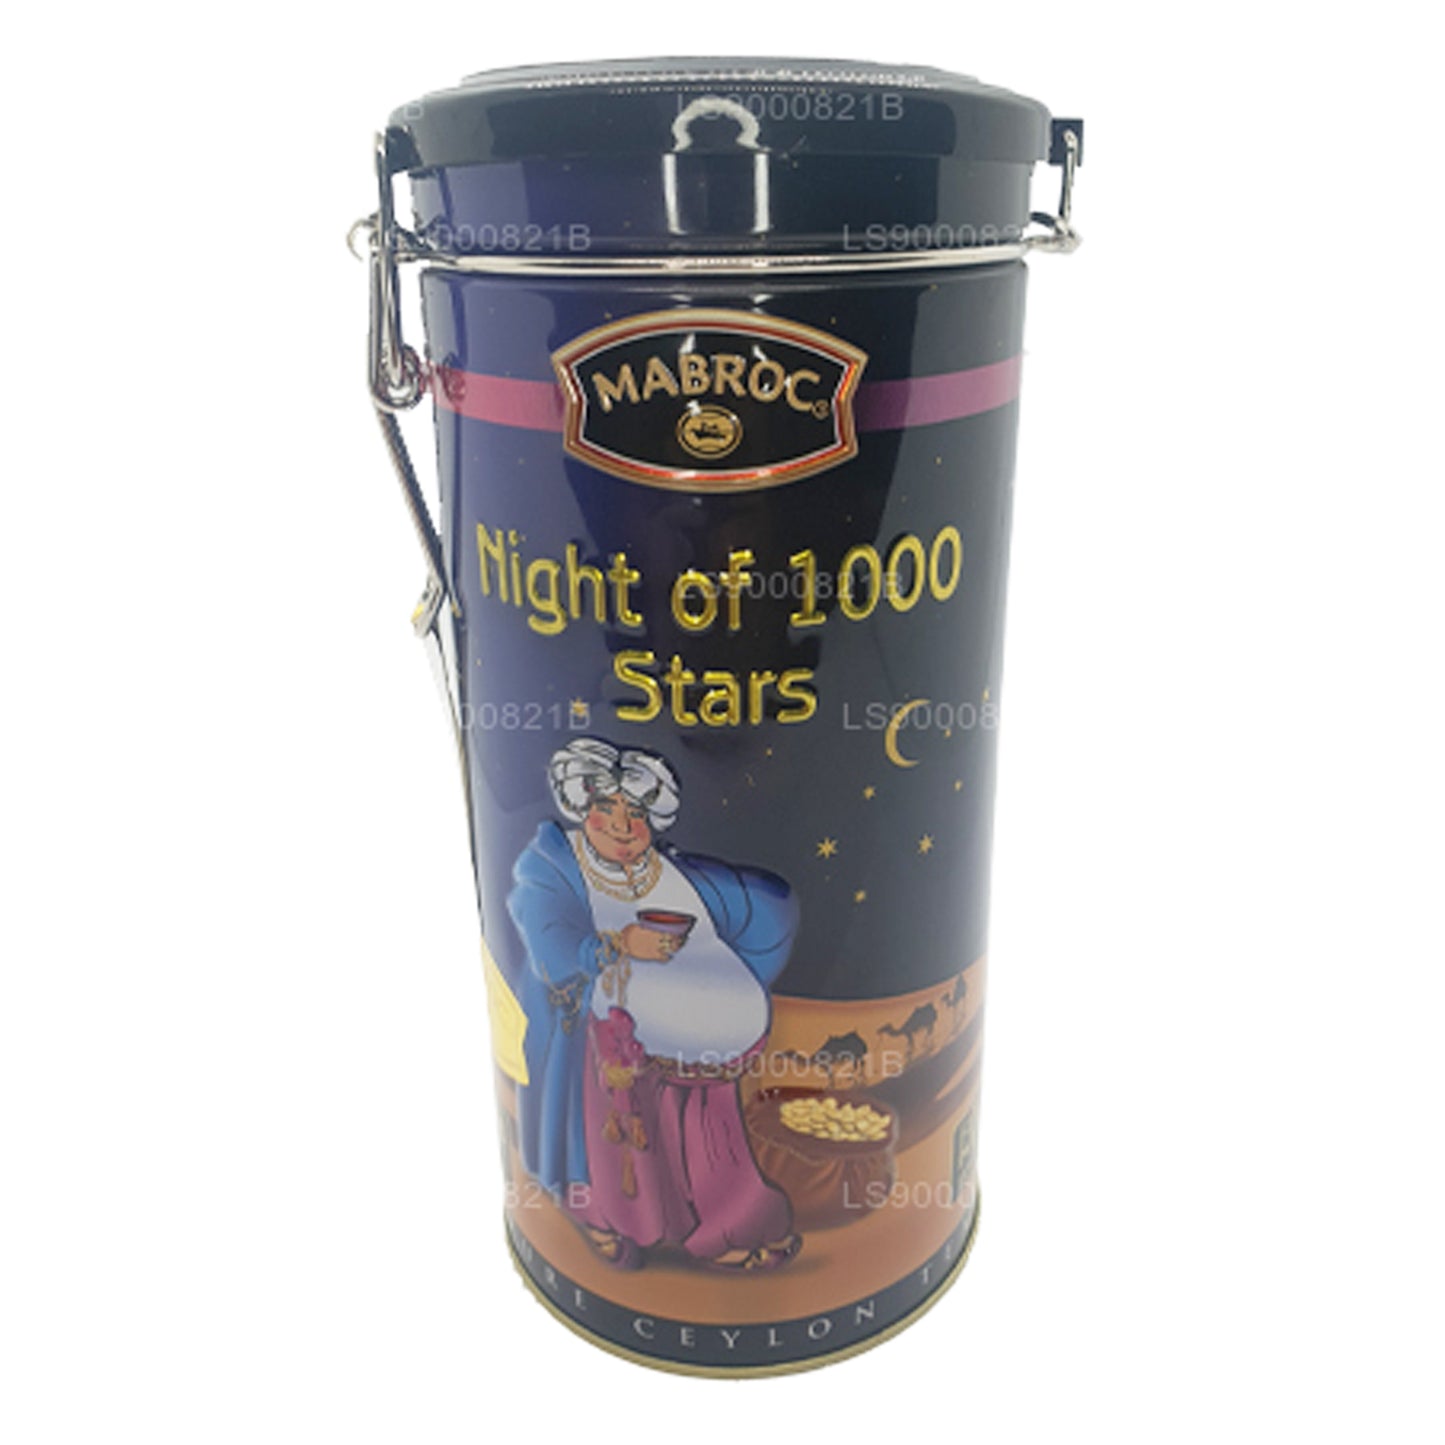 Mabroc La noche de las 1000 estrellas (200 g)